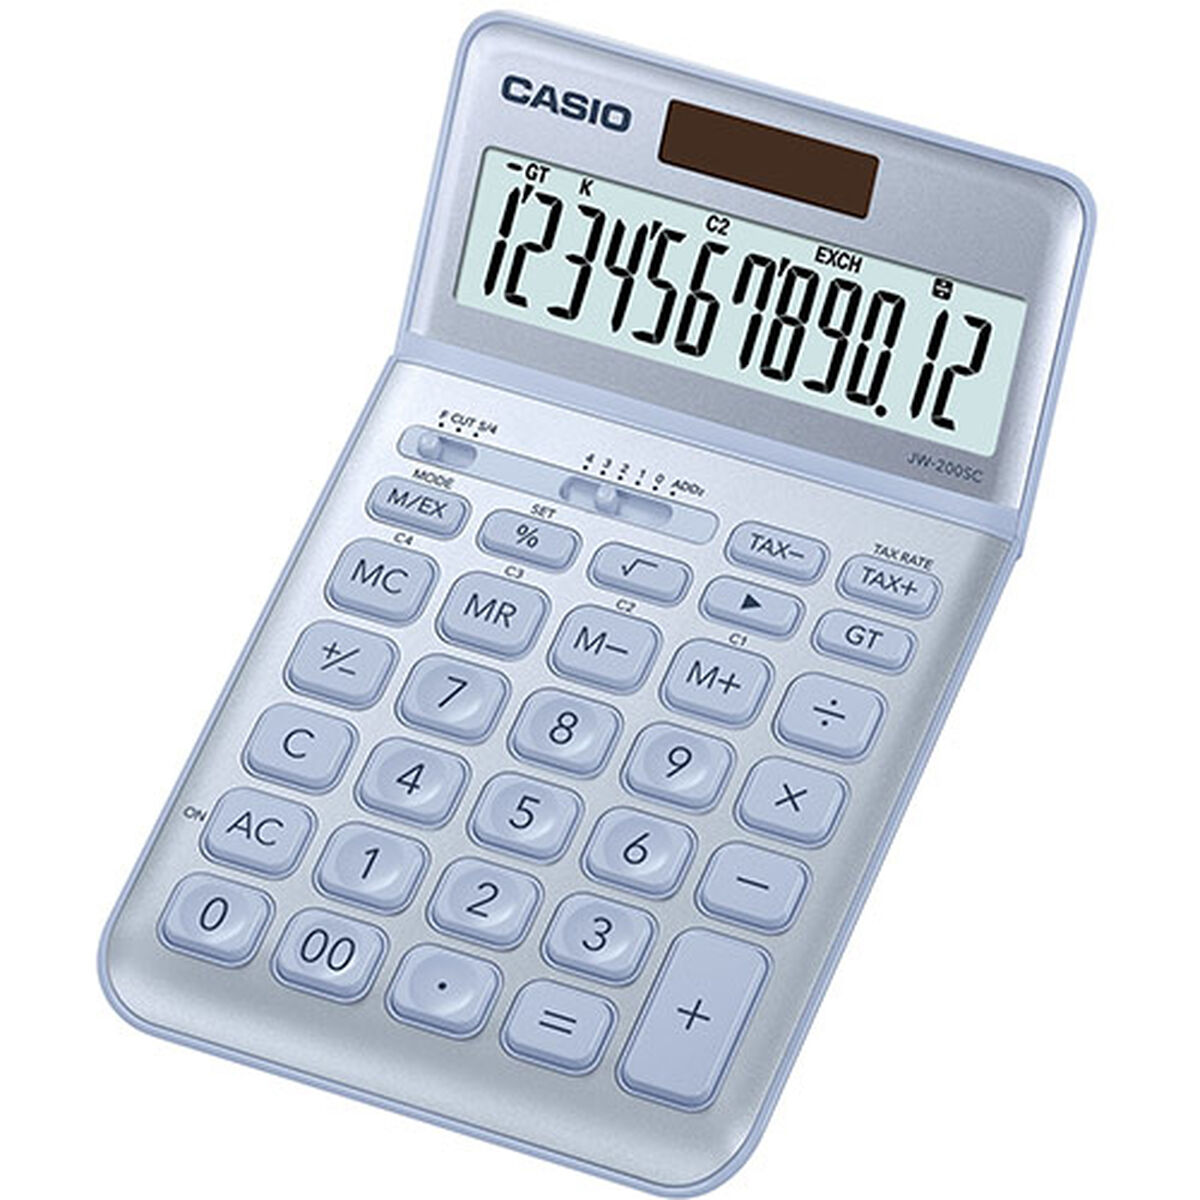 Calculator Casio JW-200SC-BU Albastru Plastic (18,3 x 10,9 x 1 cm)